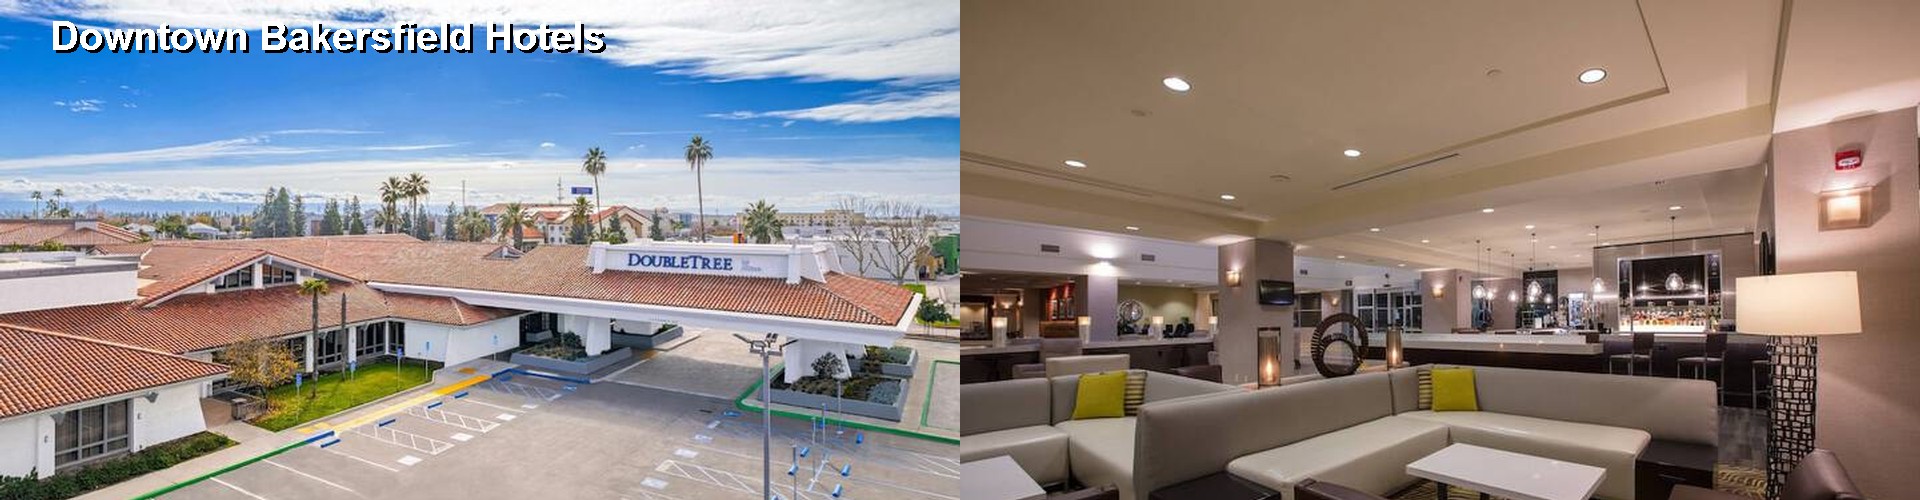 4 Best Hotels near Downtown Bakersfield